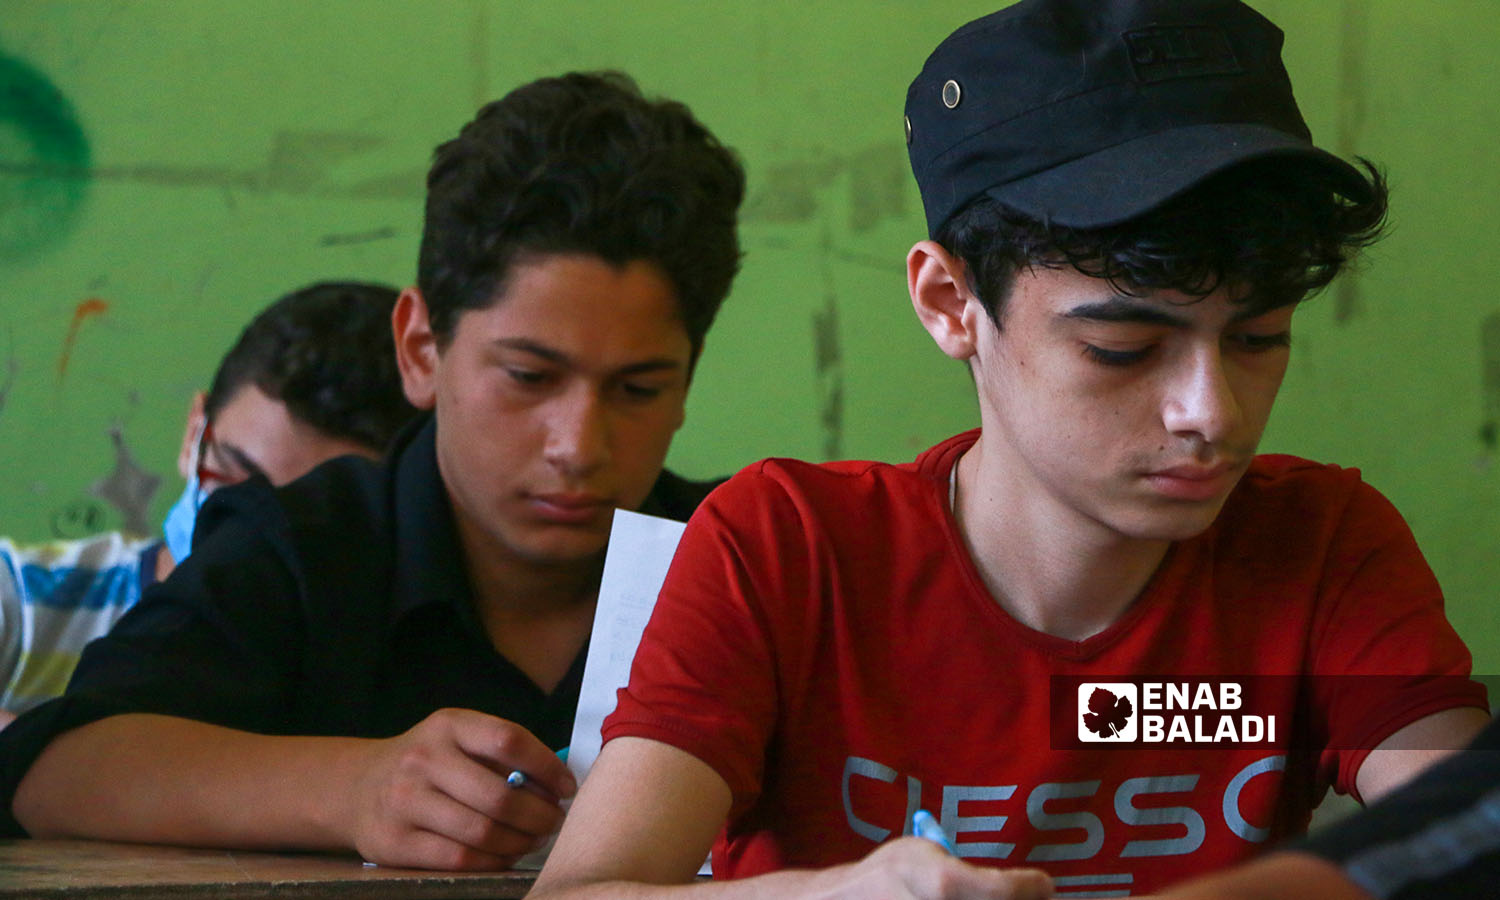 طالاب في قاعة الامتحان في مدينة إدلب (عنب بلدي/ أنس الخولي)